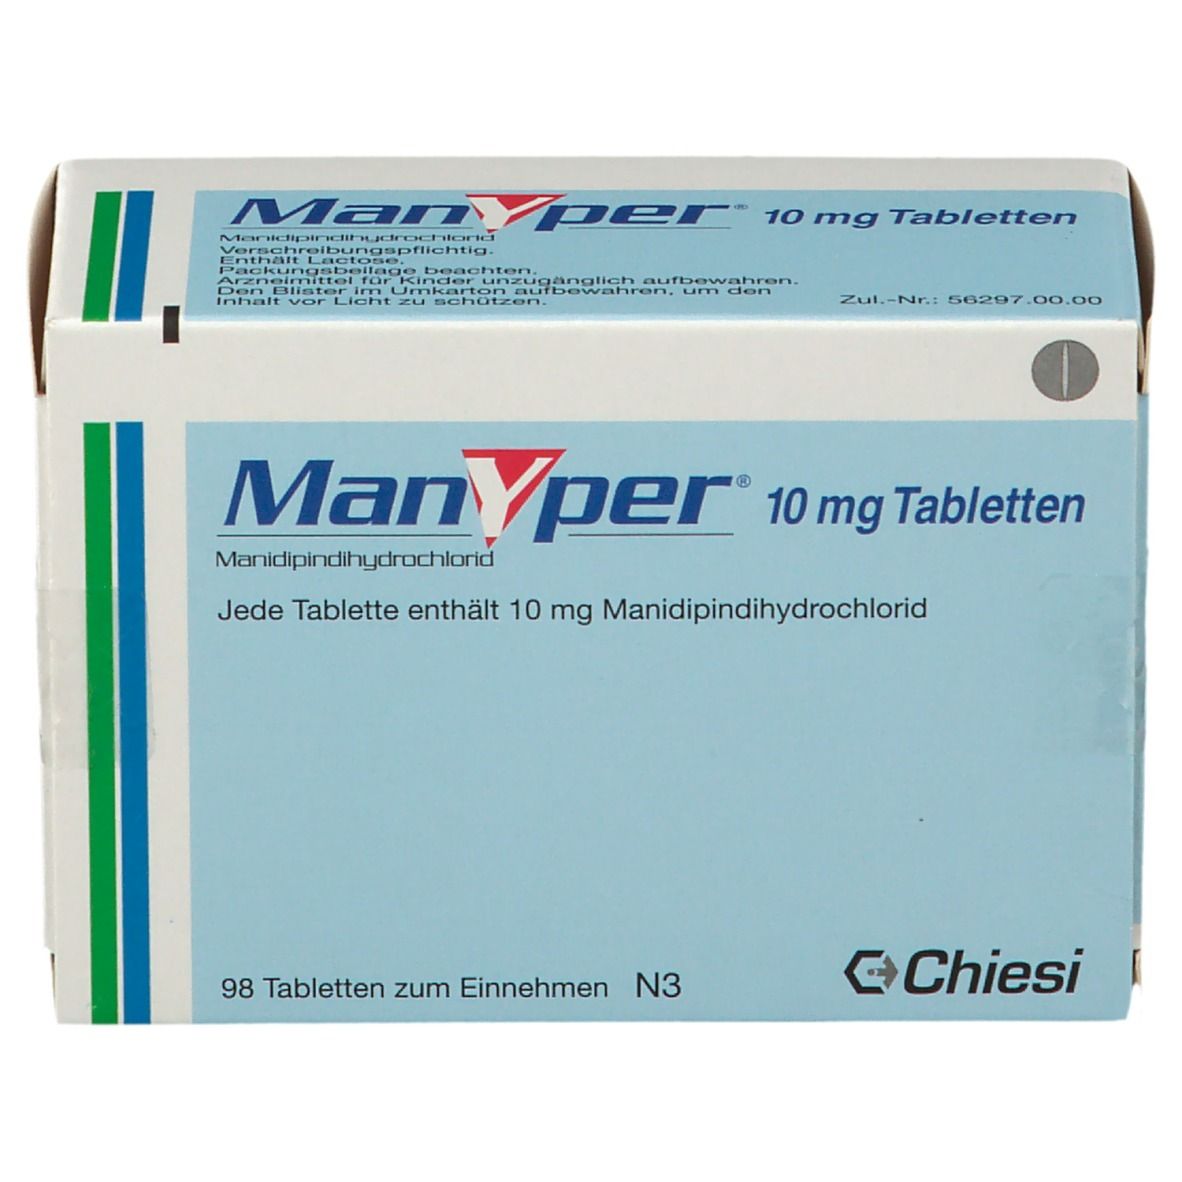 Manyper® 10 mg